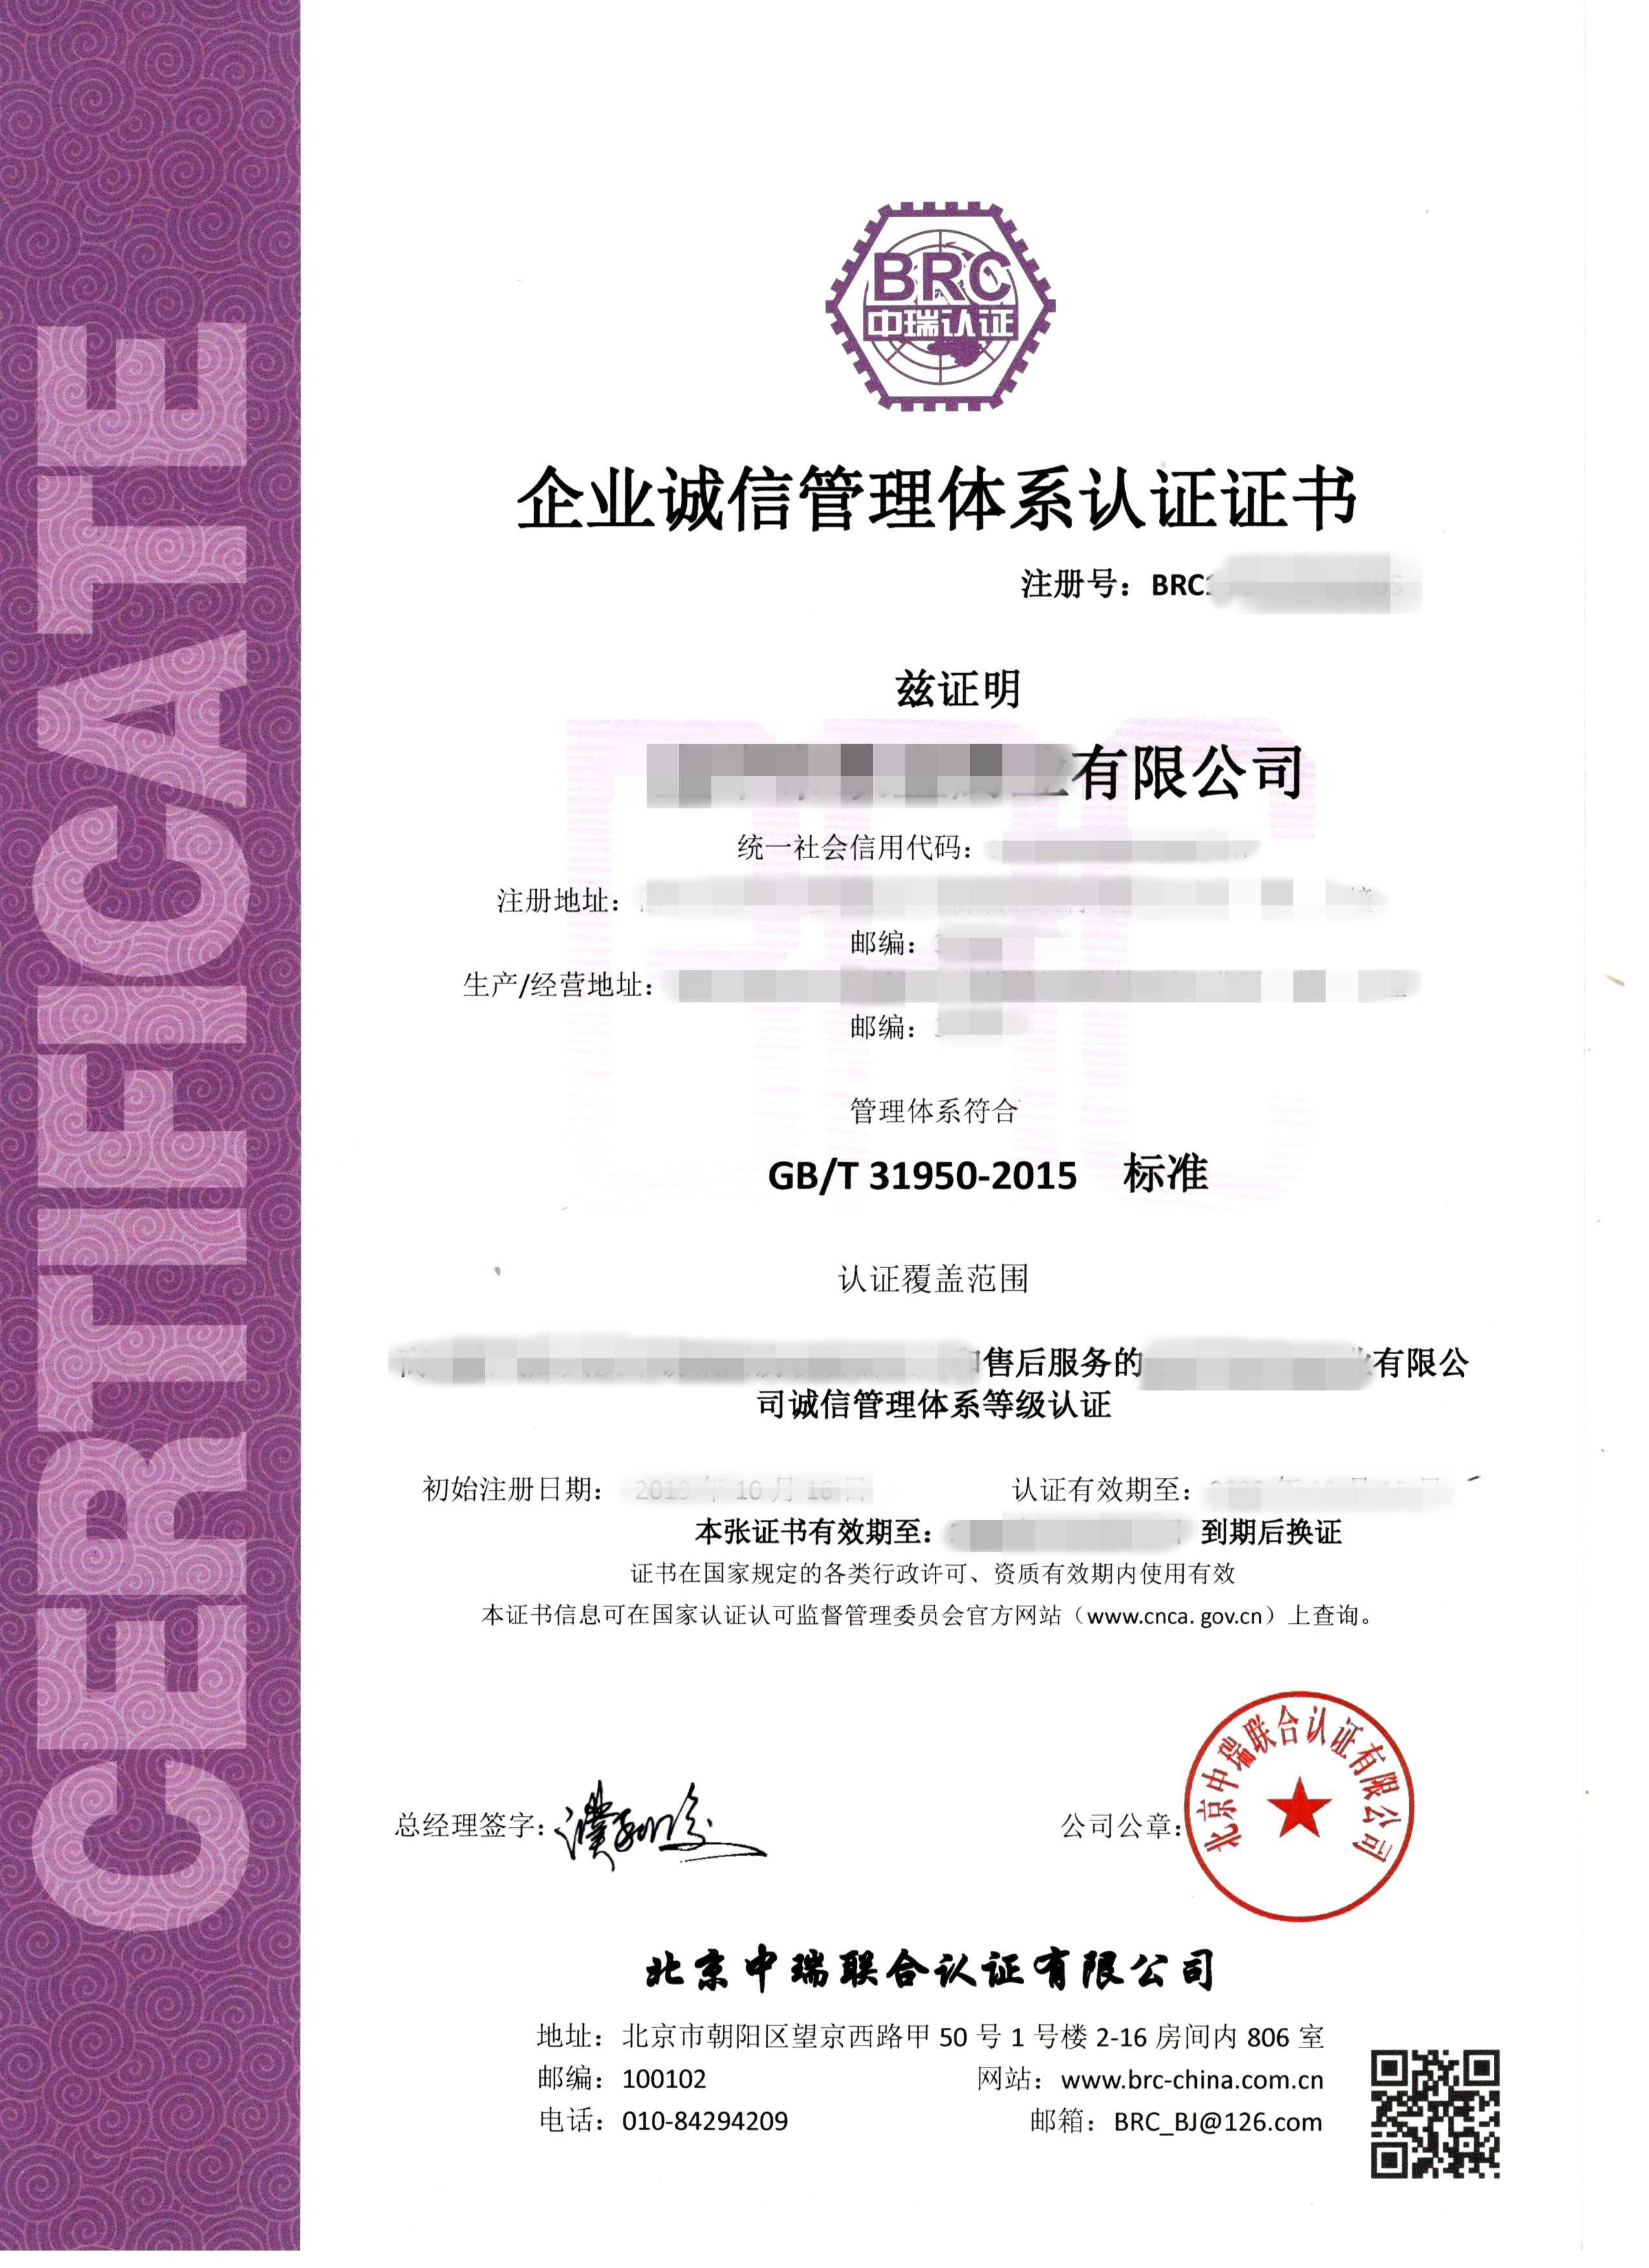 GB/T31950企业诚信管理体系认证